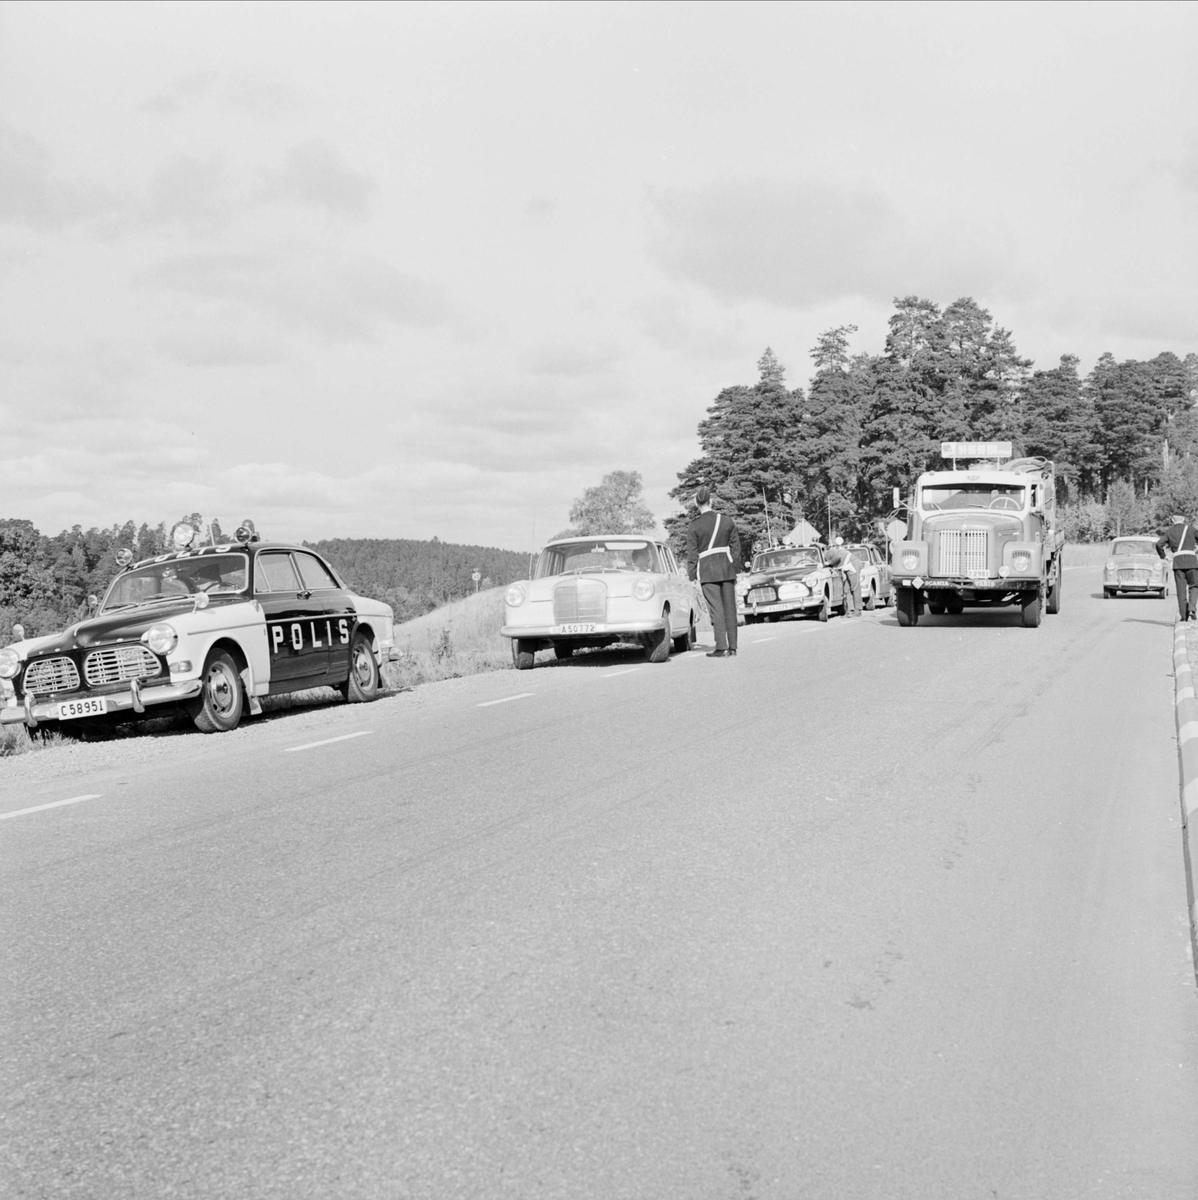 "Ulleråkersrymlingar - polisspärr", strax efter Flottsundsbron mot Stockholm, Uppland 1967